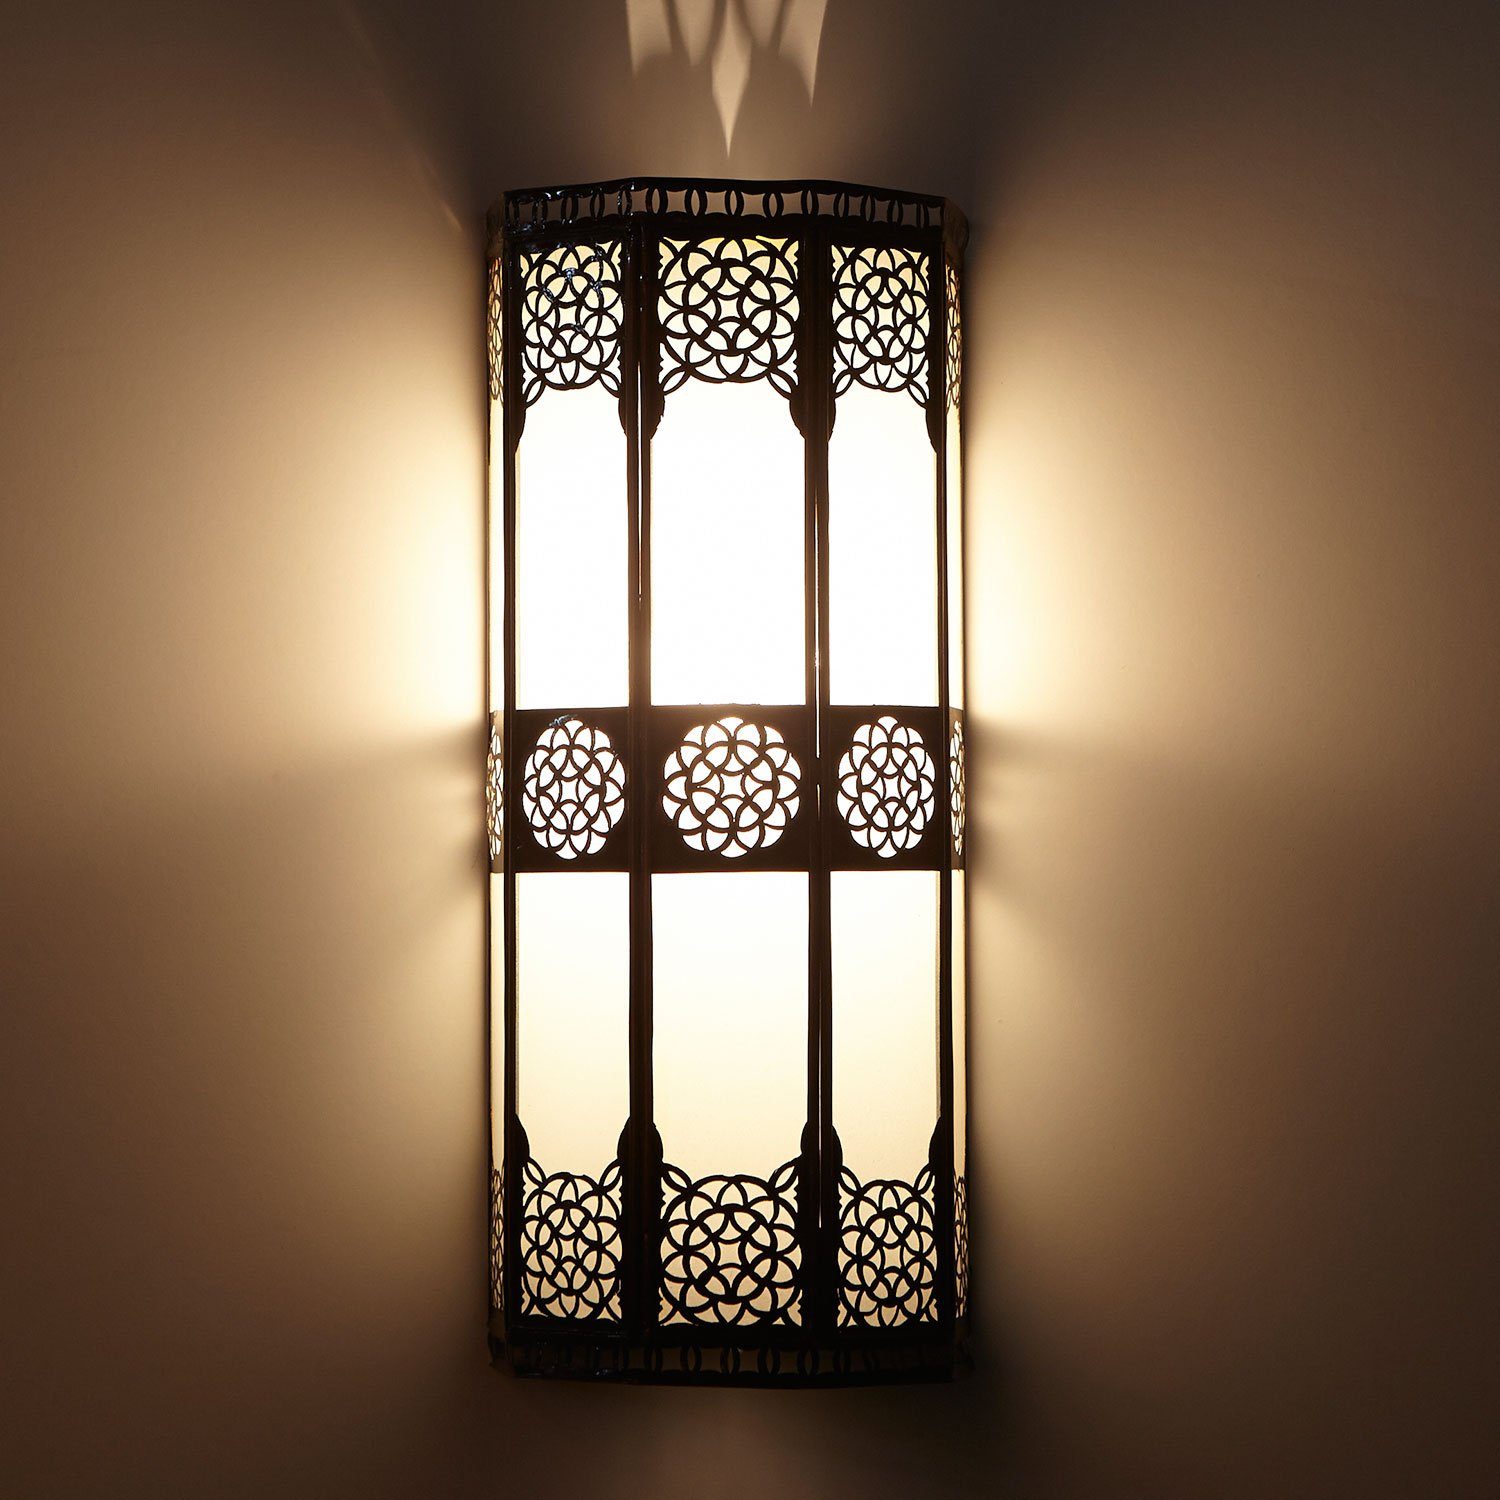 Casa Moro Wandleuchte Orientalische Wandlampe marokkanische Wandleuchte Resmi H 44, ohne Leuchtmittel, Schöne Dekoration für Wand & Flur, Kunsthandwerk aus Marrakesch, L1421